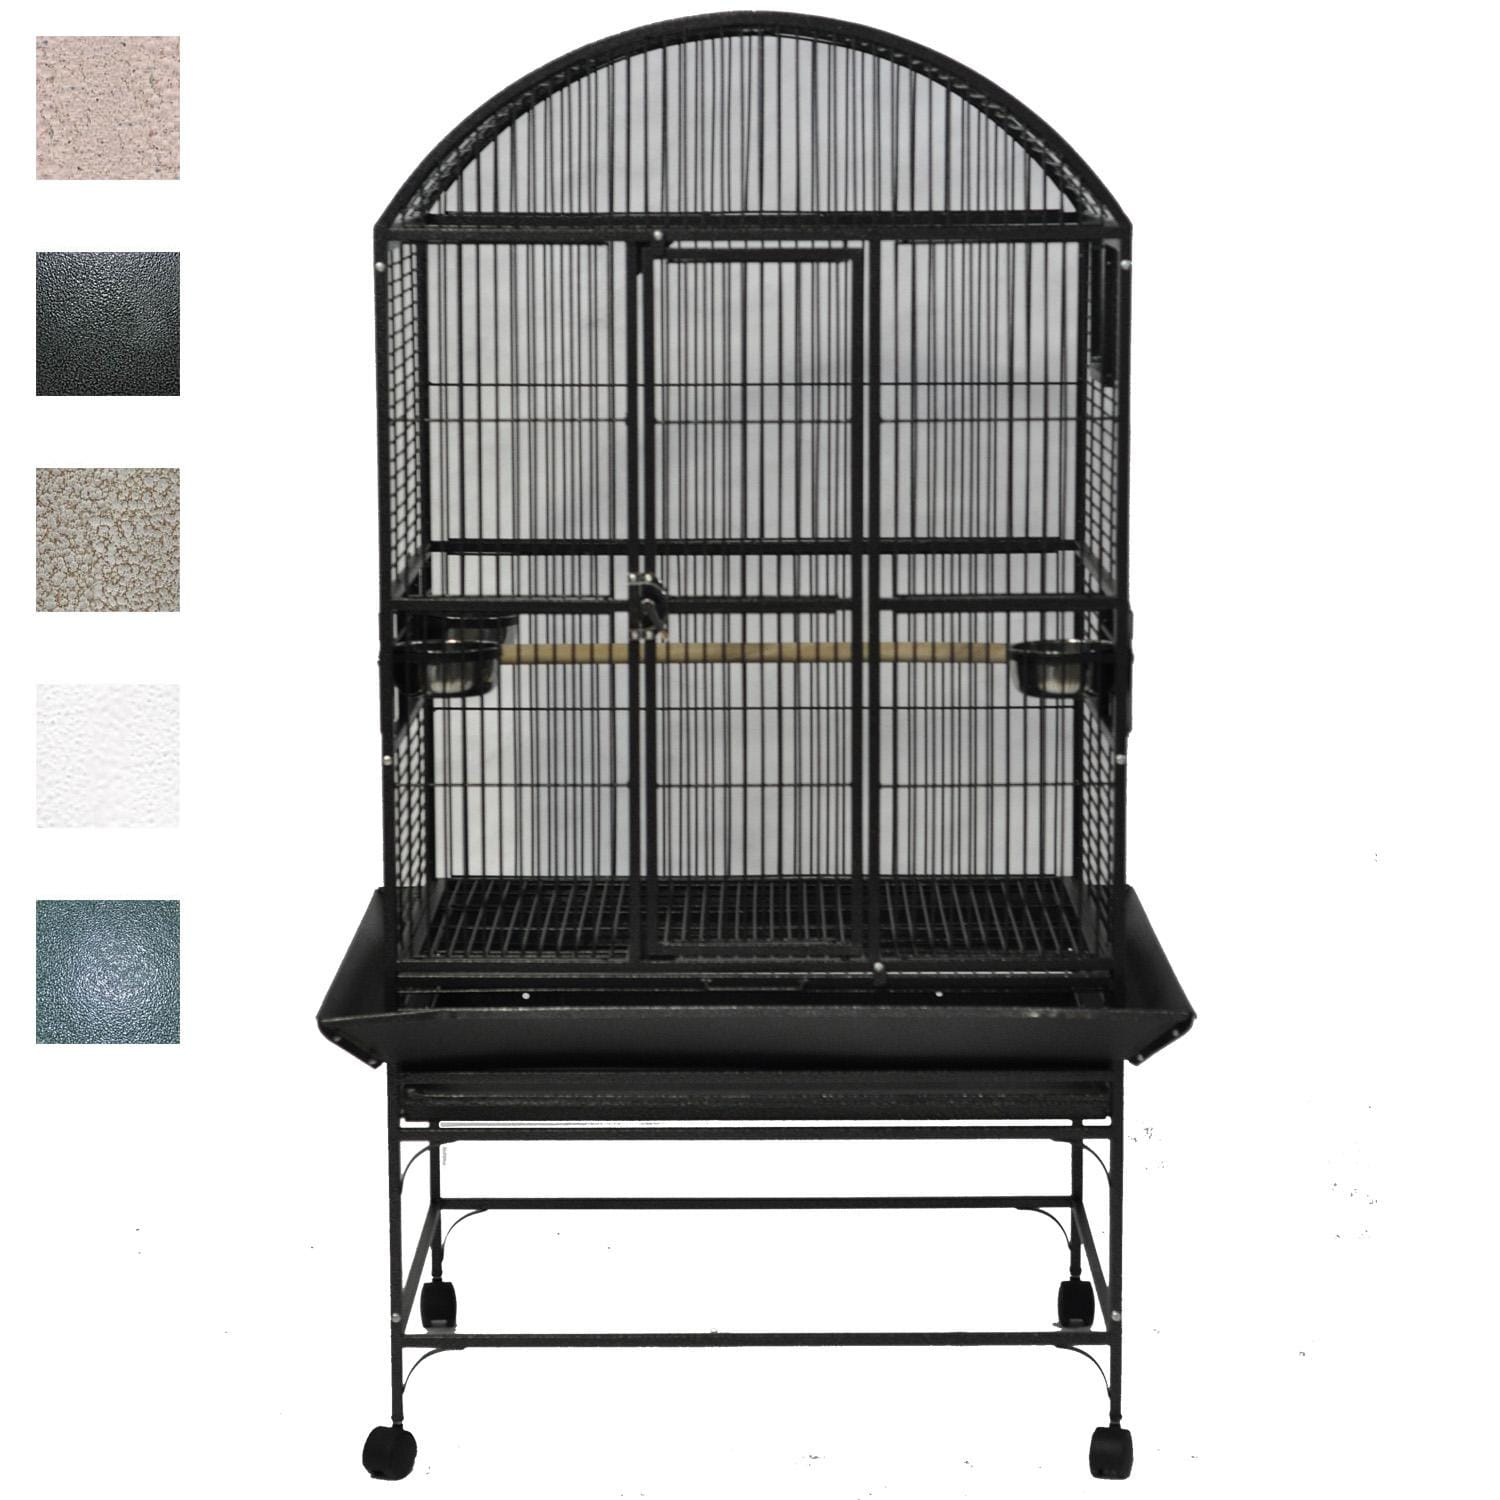 A E Cage Company Black Palace Dometop Bird Cage 32 L X 23 W X 63 H Petco